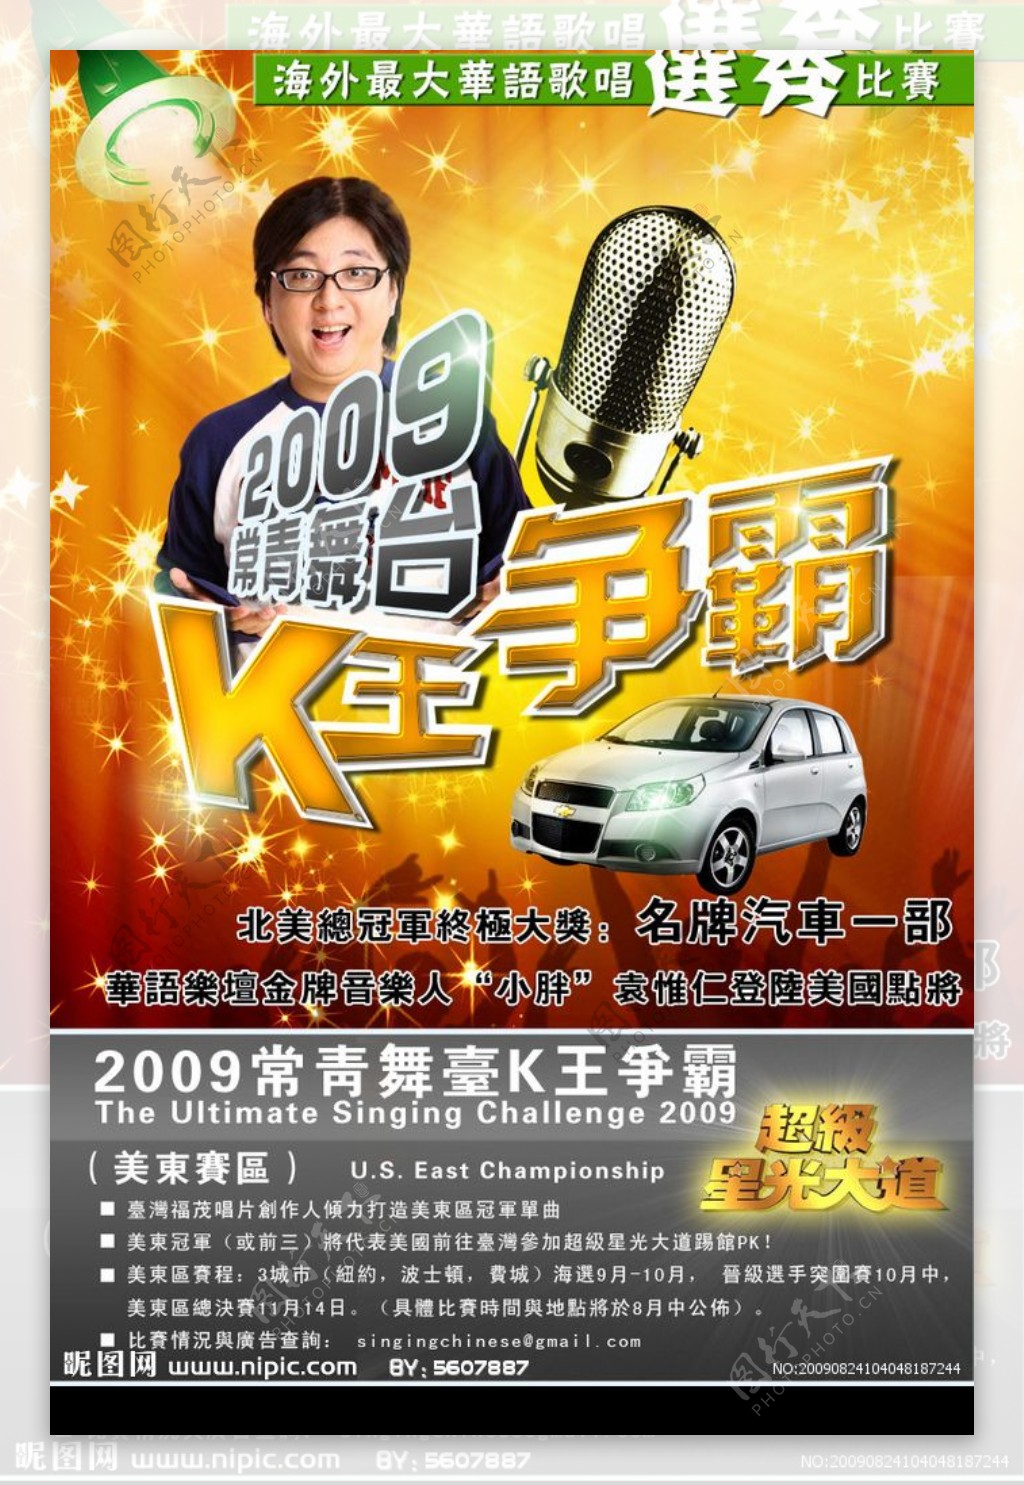 K王争霸唱歌选秀大赛宣传单海报图片